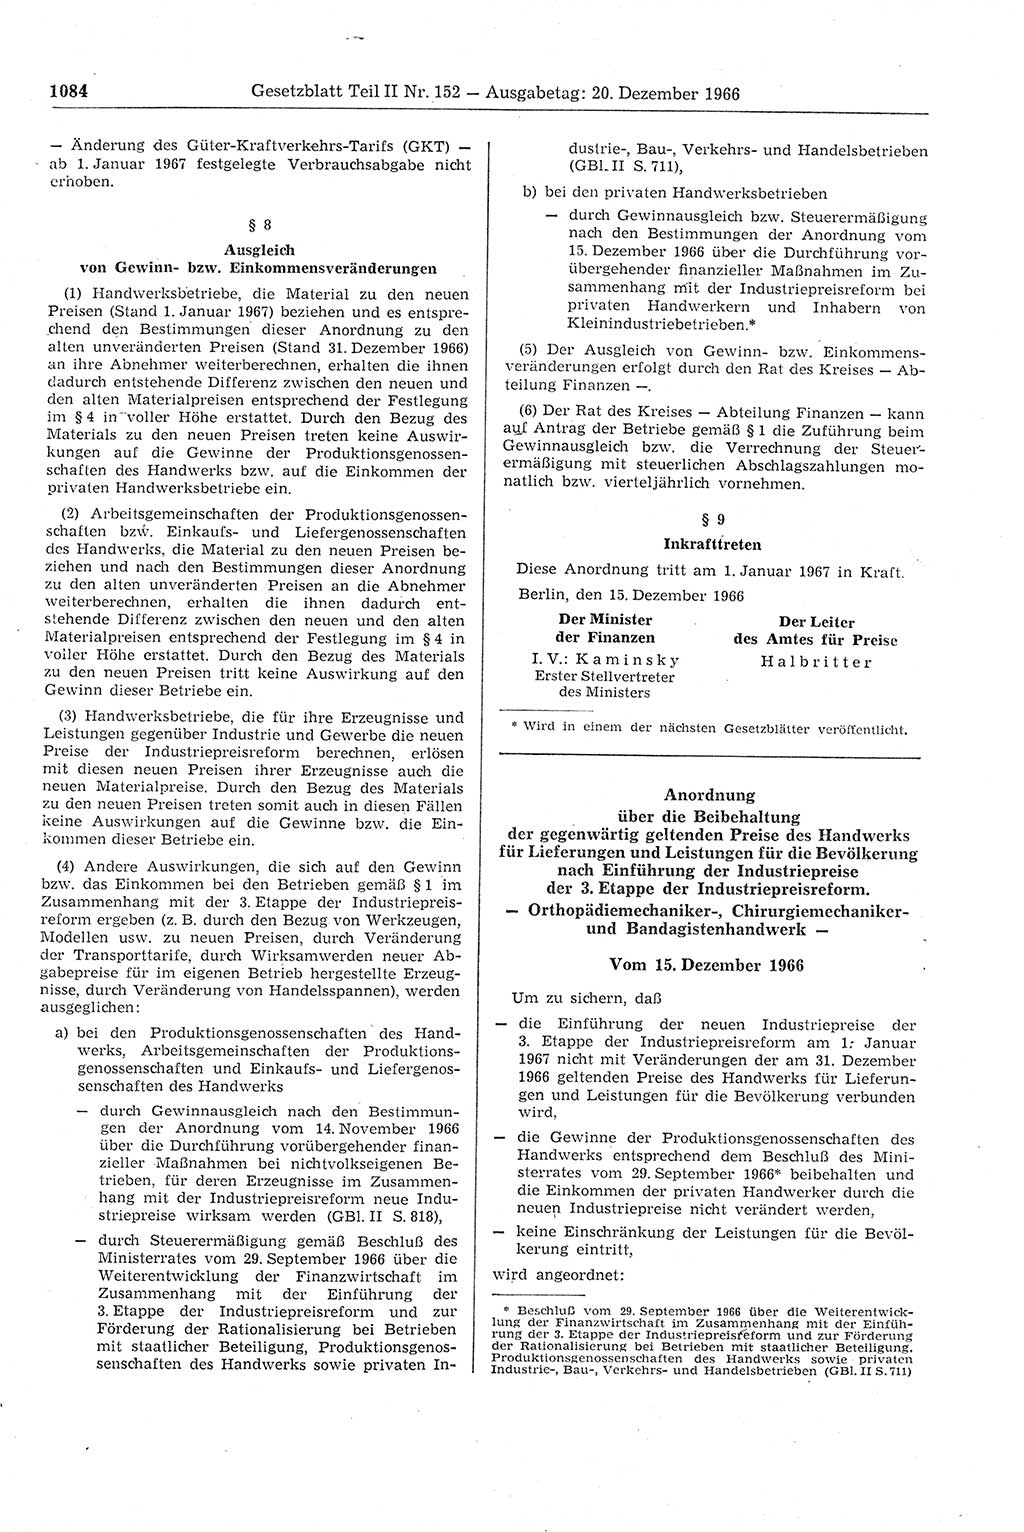 Gesetzblatt (GBl.) der Deutschen Demokratischen Republik (DDR) Teil ⅠⅠ 1966, Seite 1084 (GBl. DDR ⅠⅠ 1966, S. 1084)